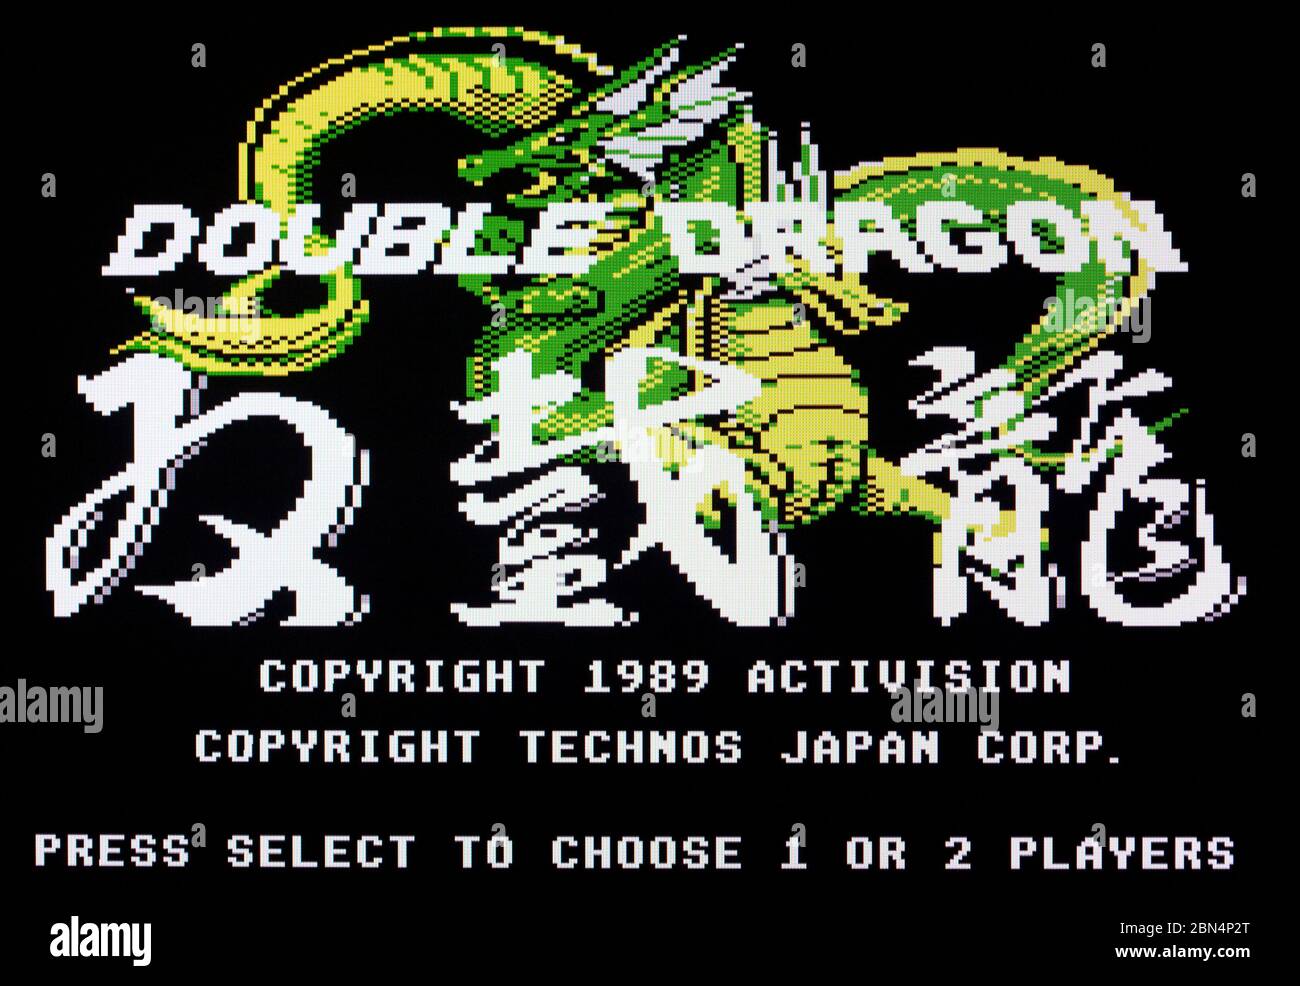 Double Dragon - Atari 7800 Videgame Stock Photo